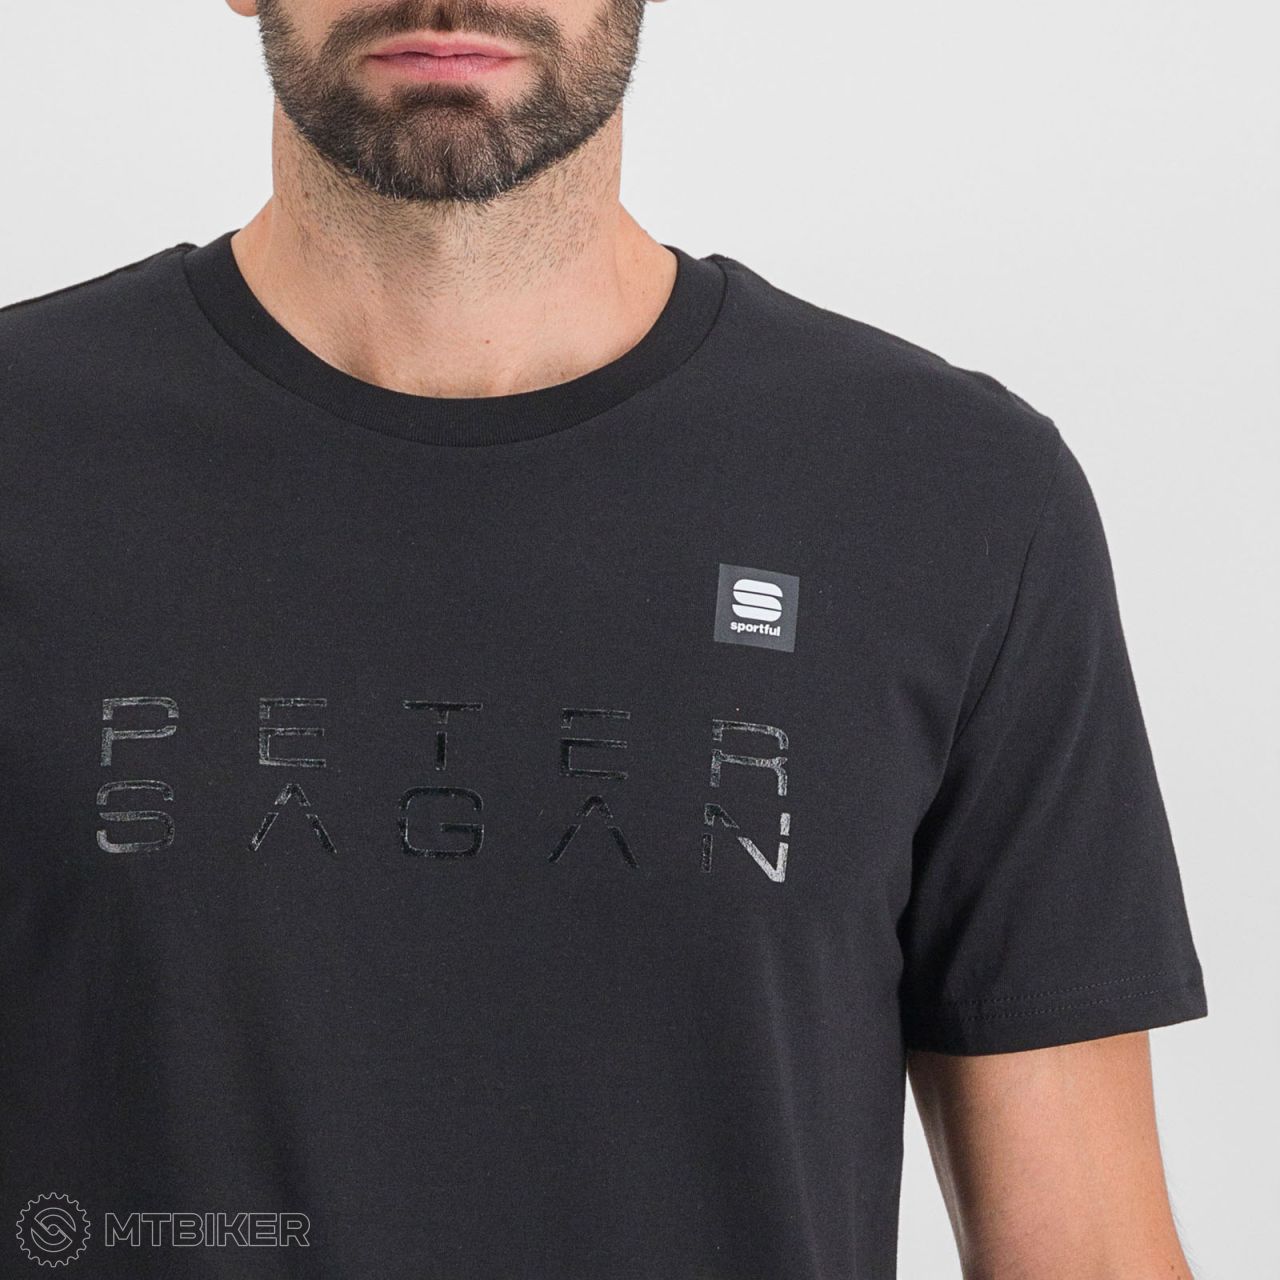 Sportful PETER SAGAN tričko, čierna - MTHIKER Shop